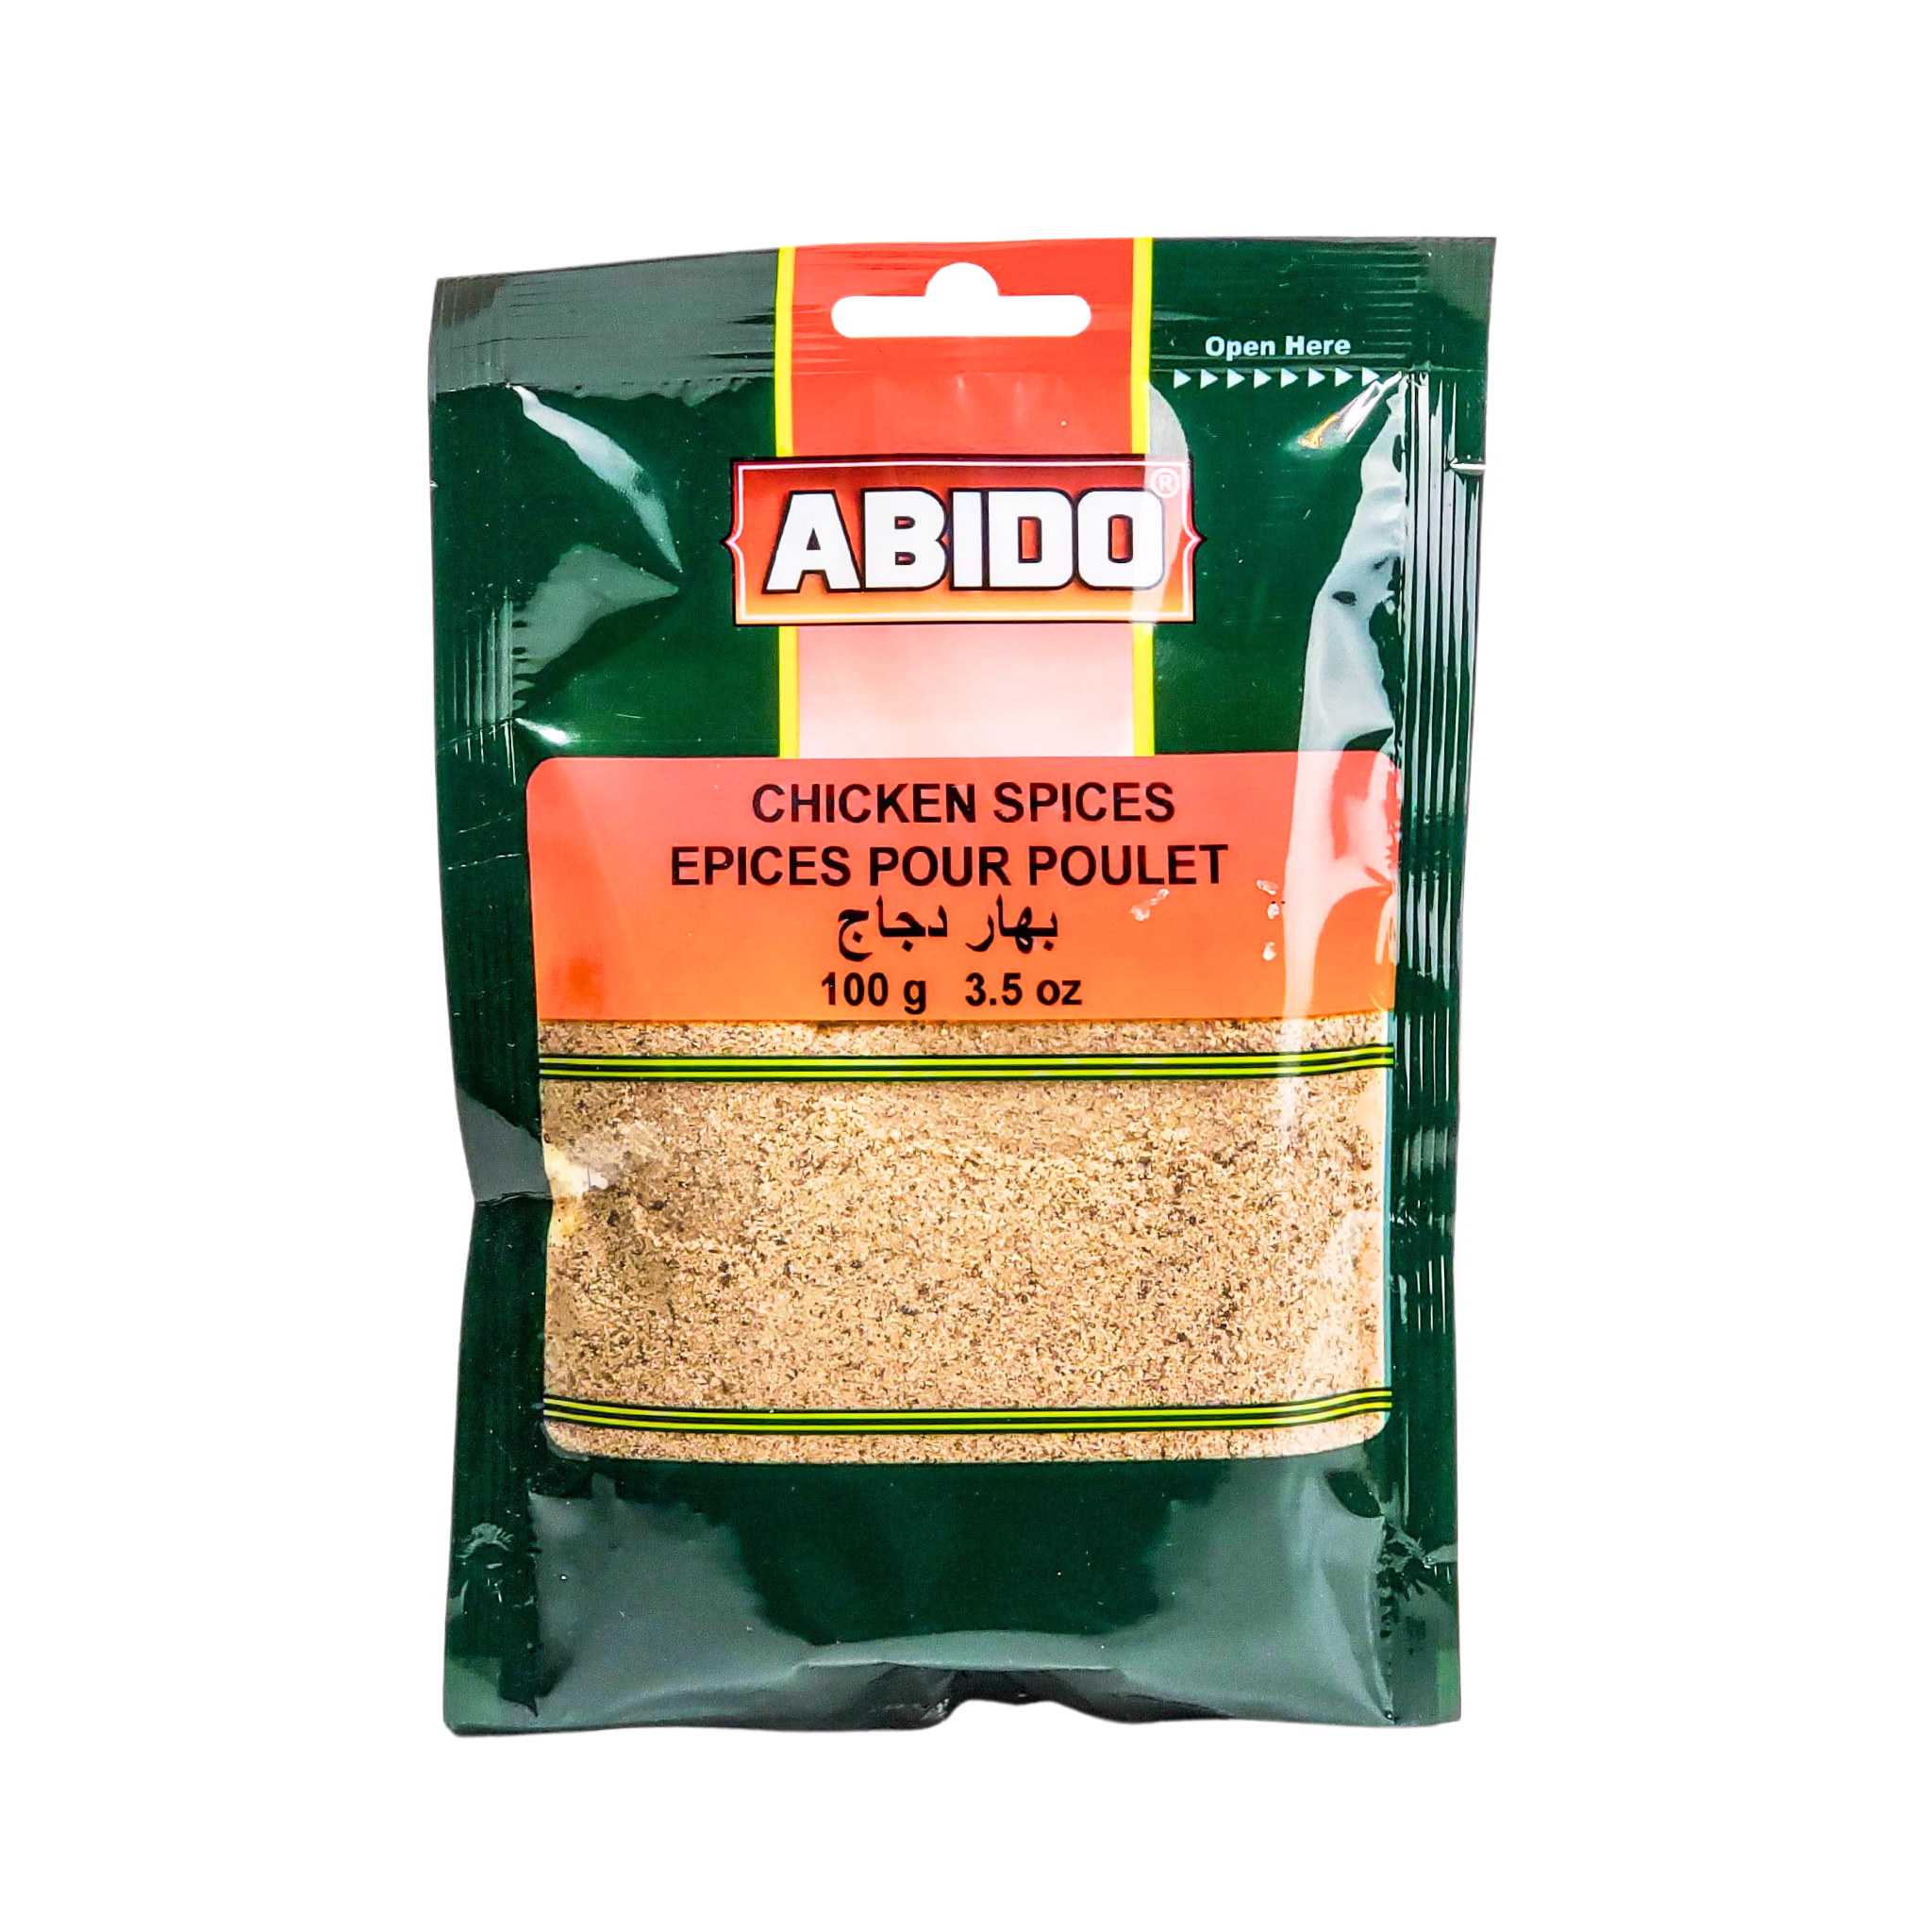 Abido Chicken Spices (Espices Pour Poulet) 100g